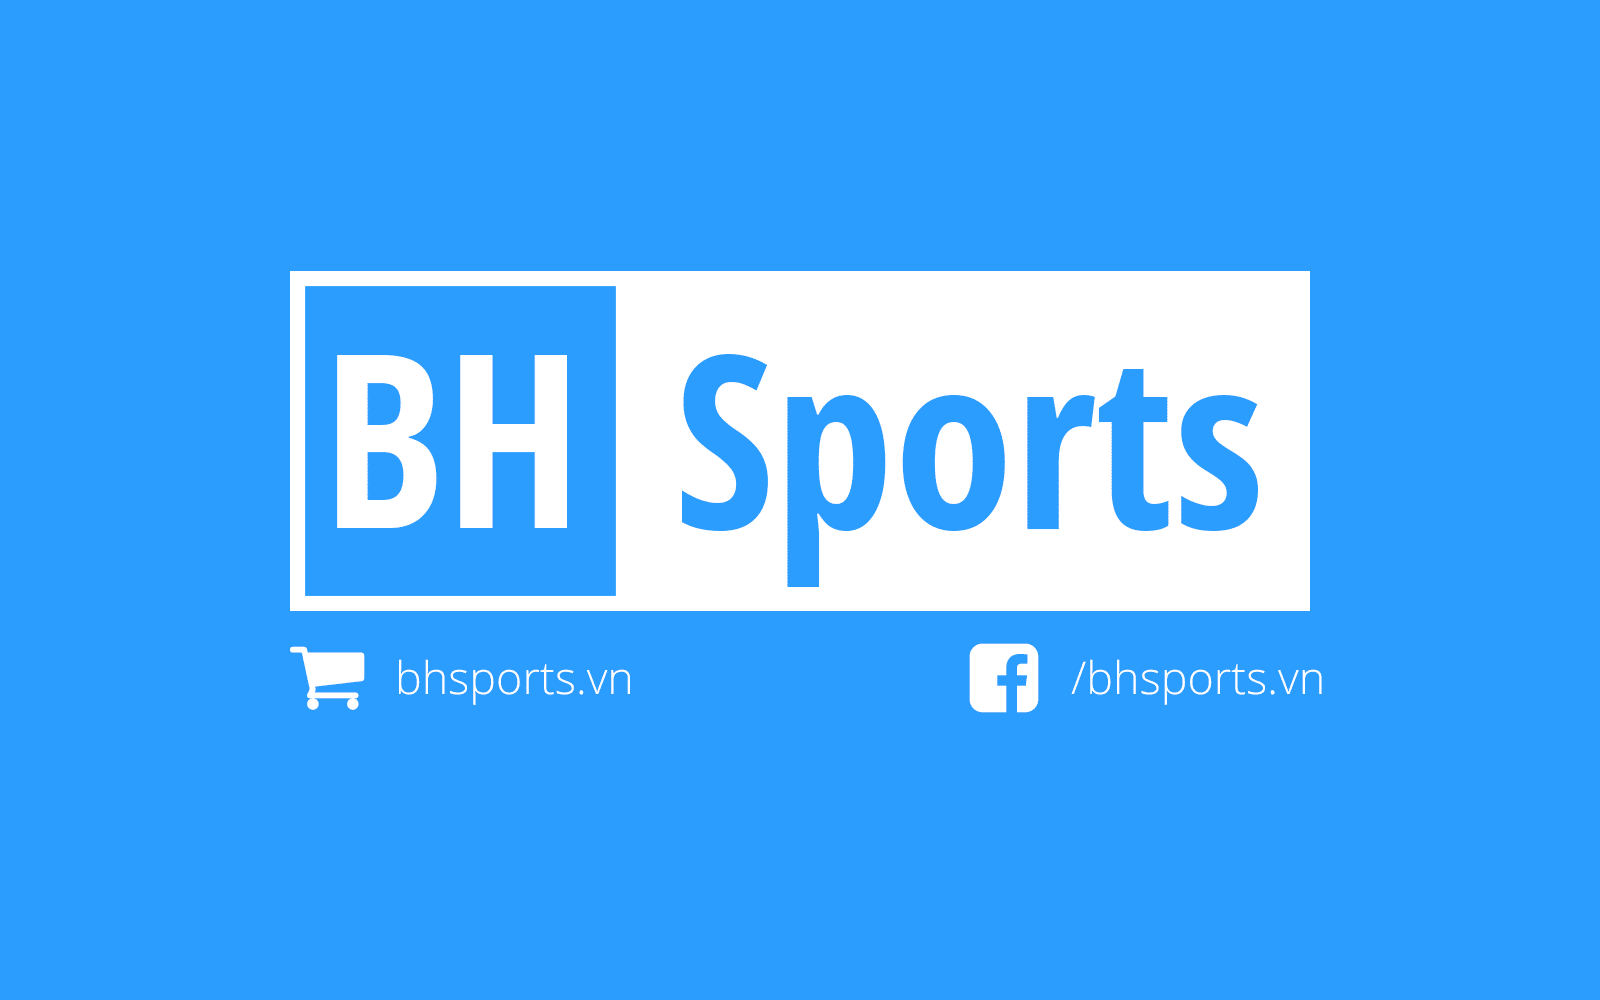 BHSportsvn Ra mắt website mới BHsports.vn - Khuyến mãi miễn phí COD toàn quốc - YCB.vn